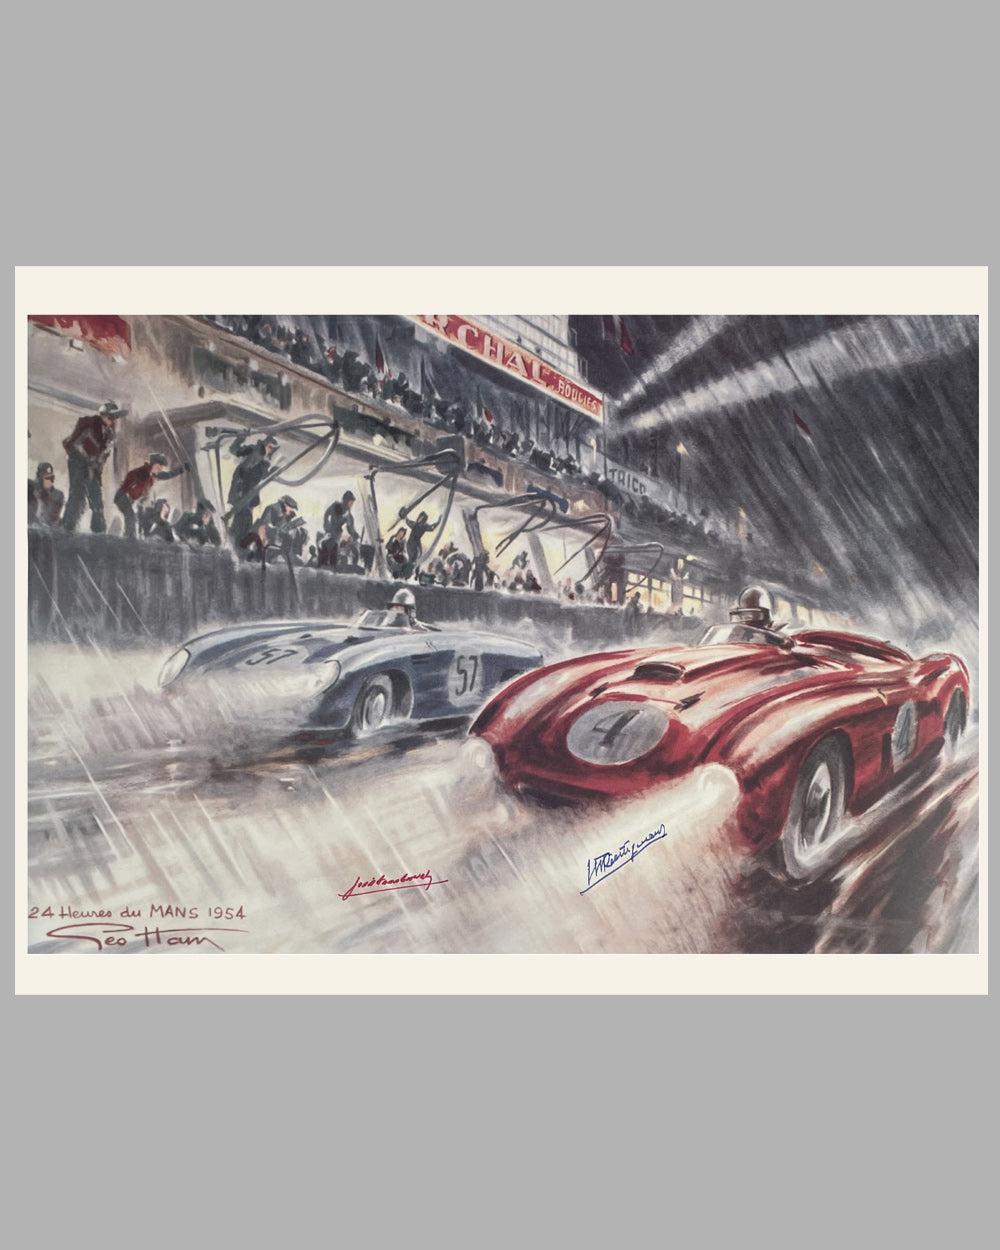 1954 Les 24 Heures du Mans print by Geo Ham, autographed by Trintignant & Gonzalez